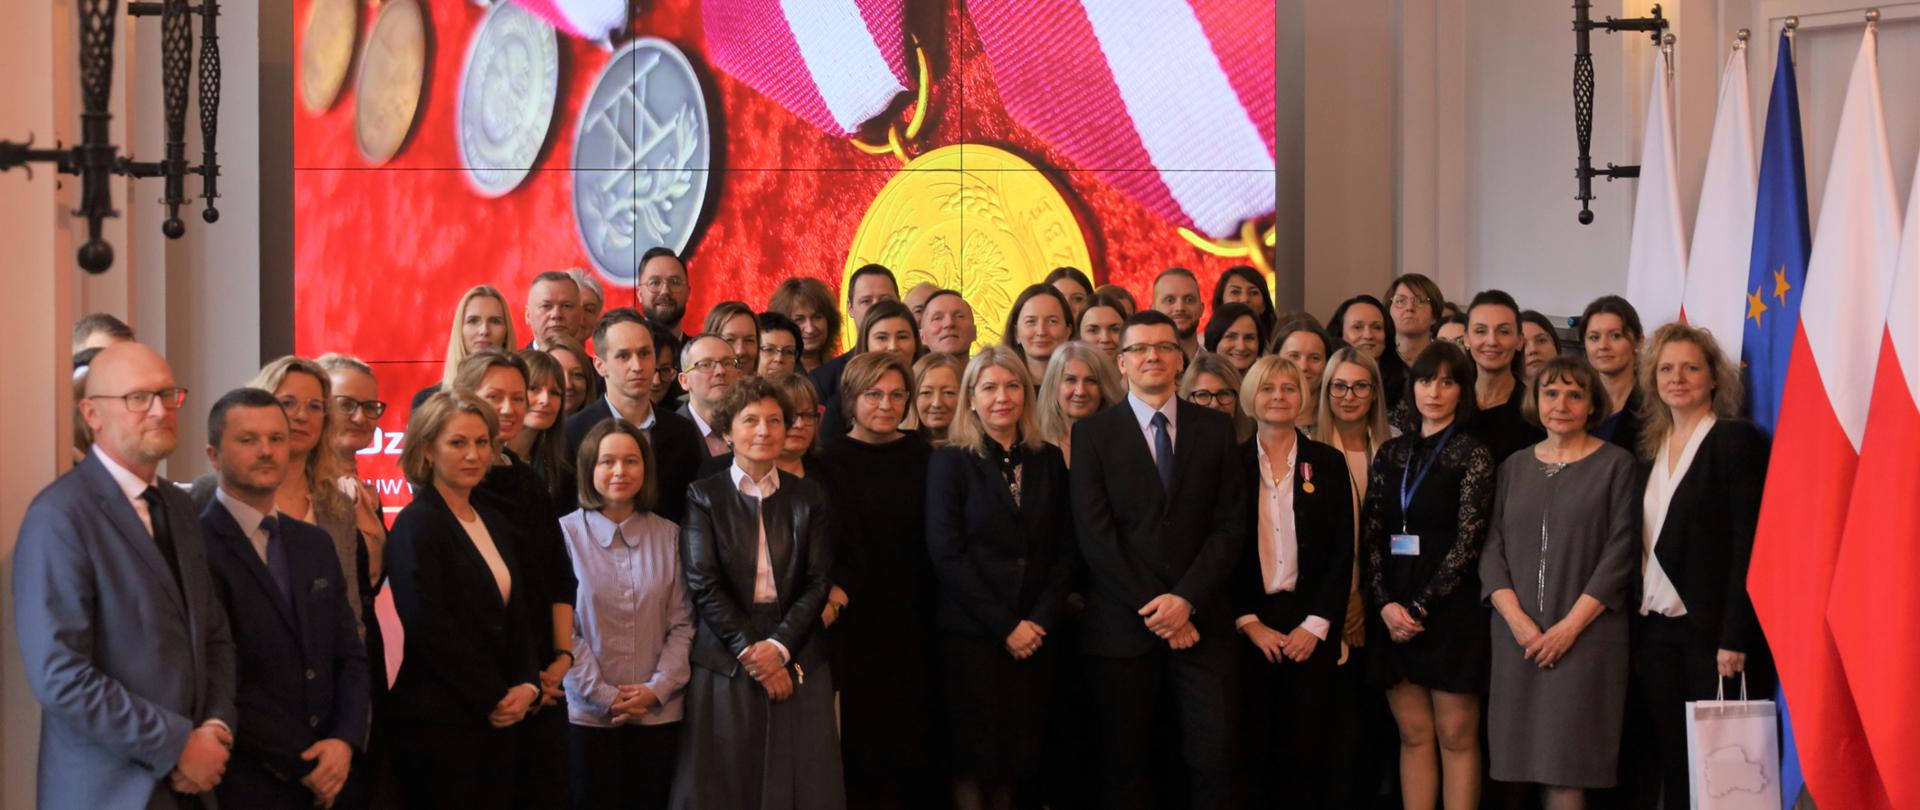 Na zdjęciu widać grupę ludzi - kobiety i mężczyźni. W tle ekran z wyświetlonym zdjęciem medali, po prawej stronie flagi - Polski i Unii Europejskiej 